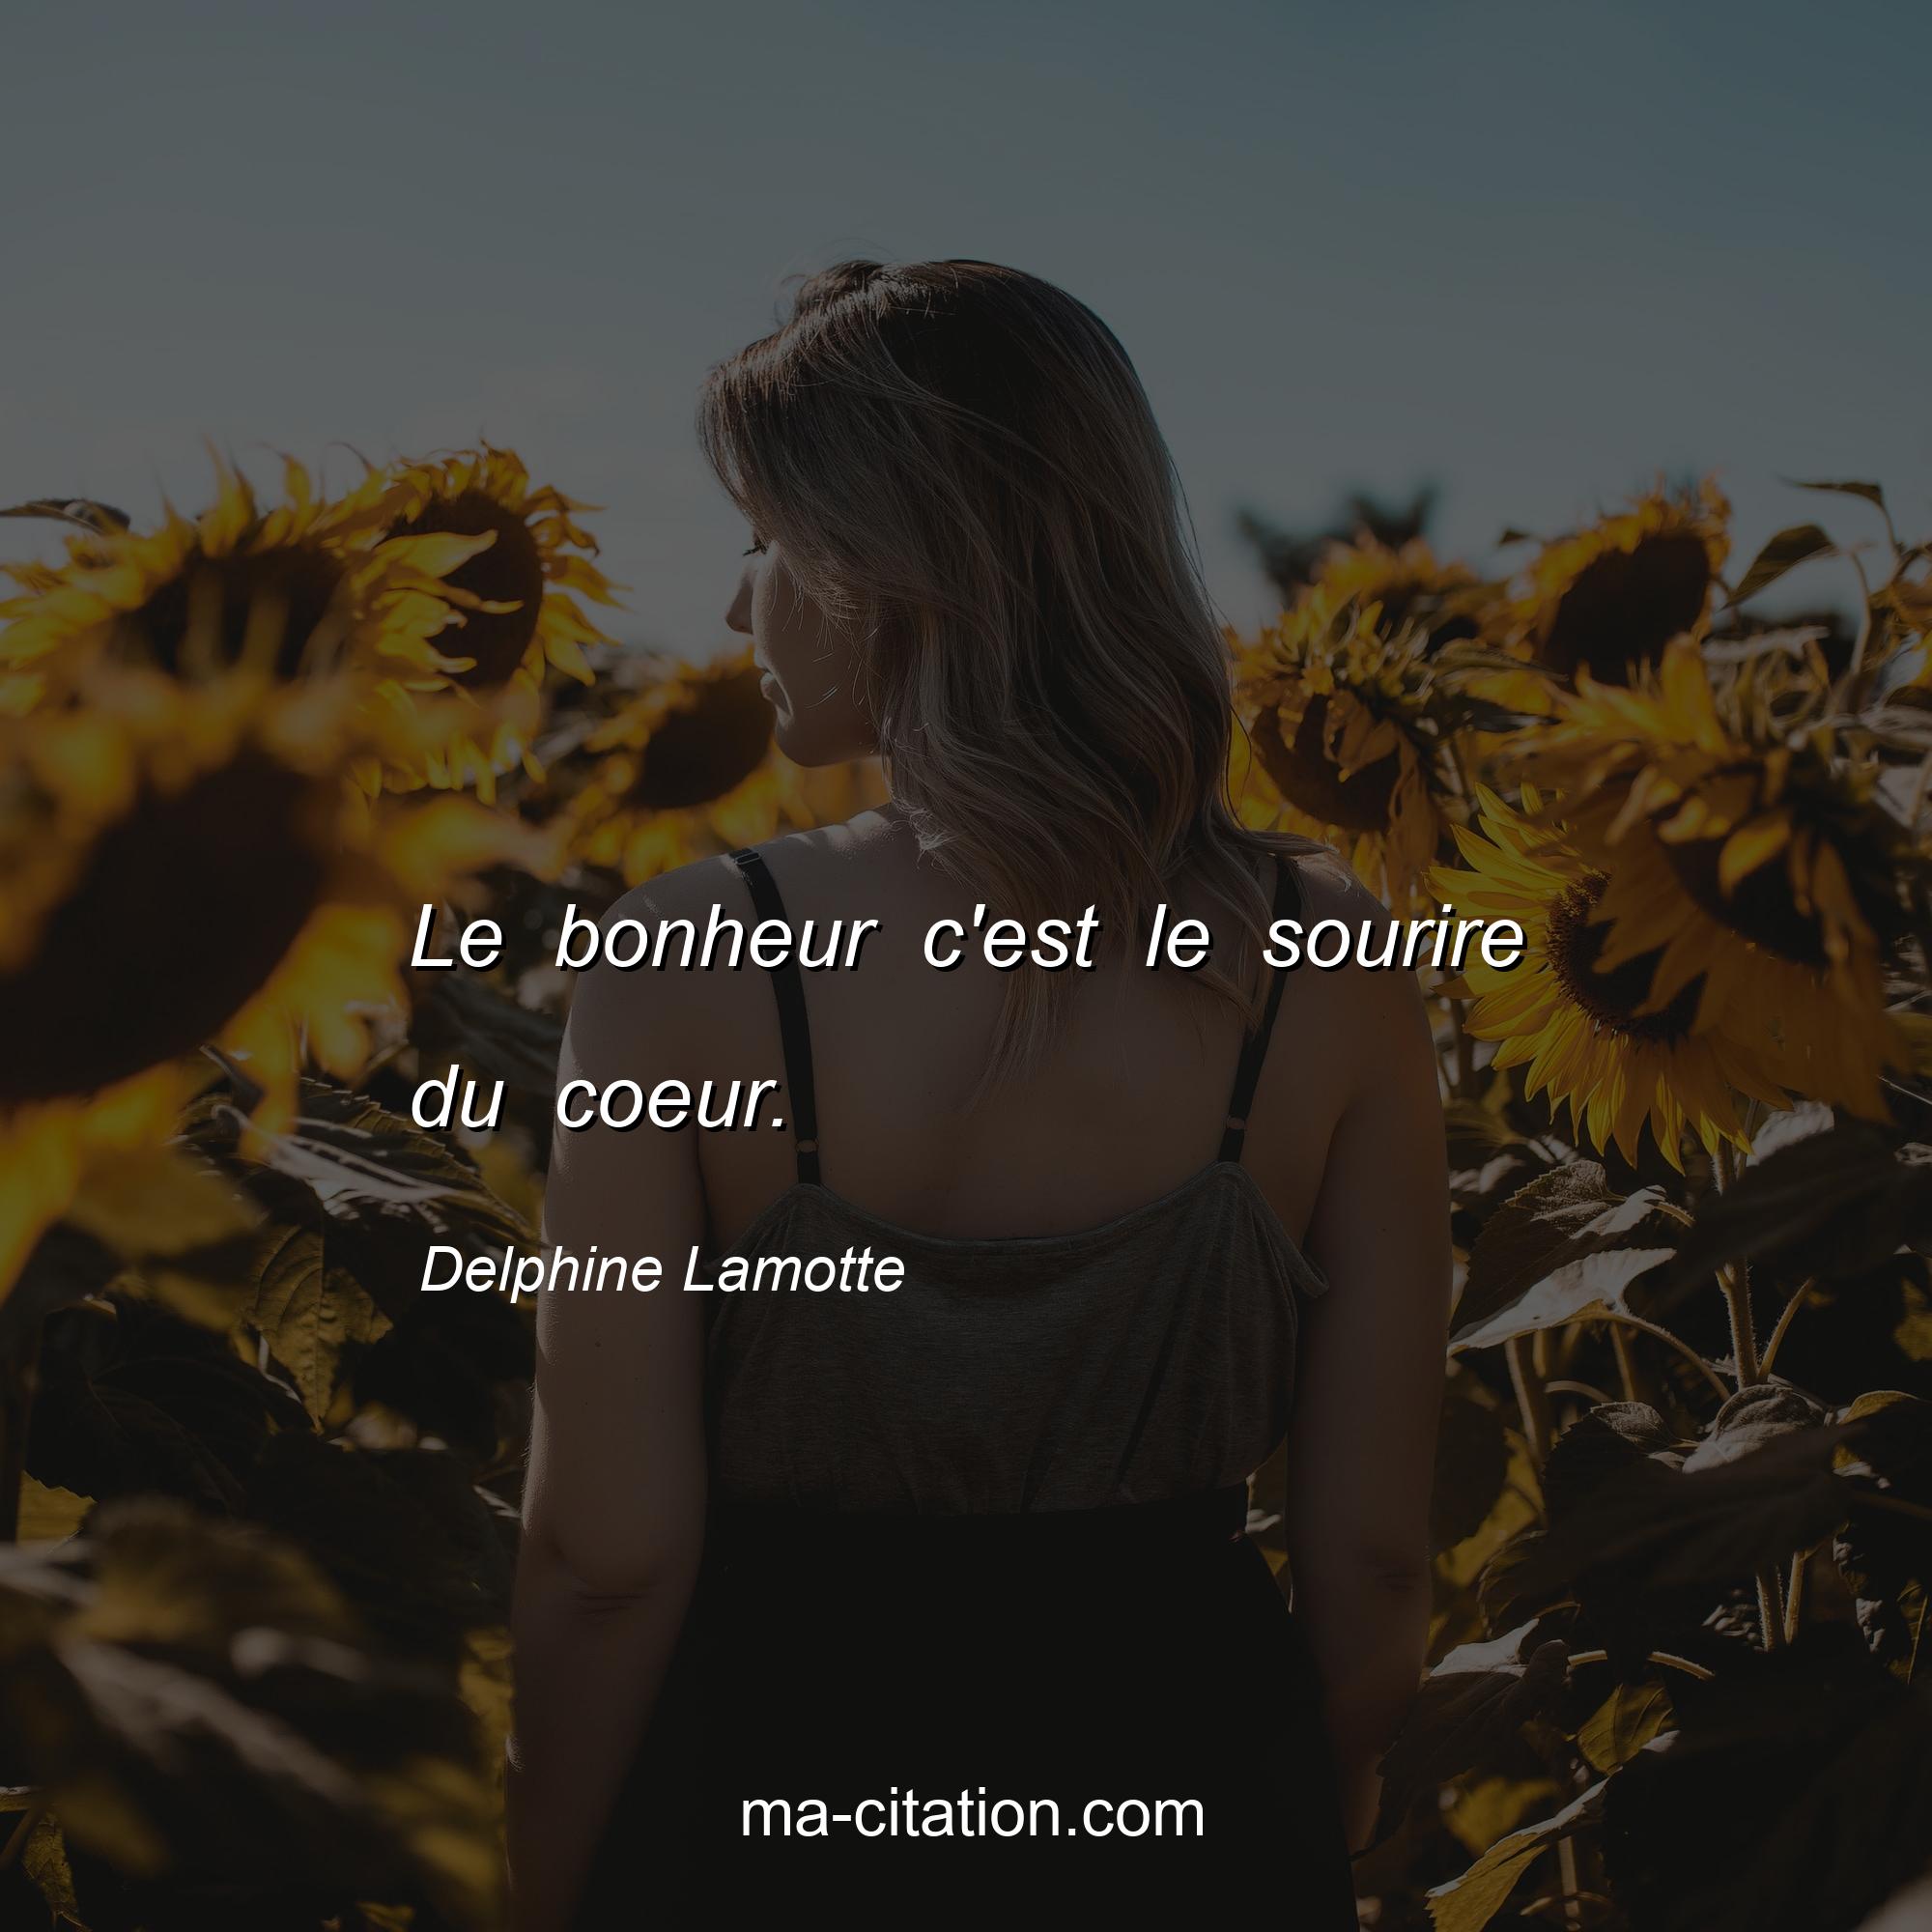 Delphine Lamotte : Le bonheur c'est le sourire du coeur.